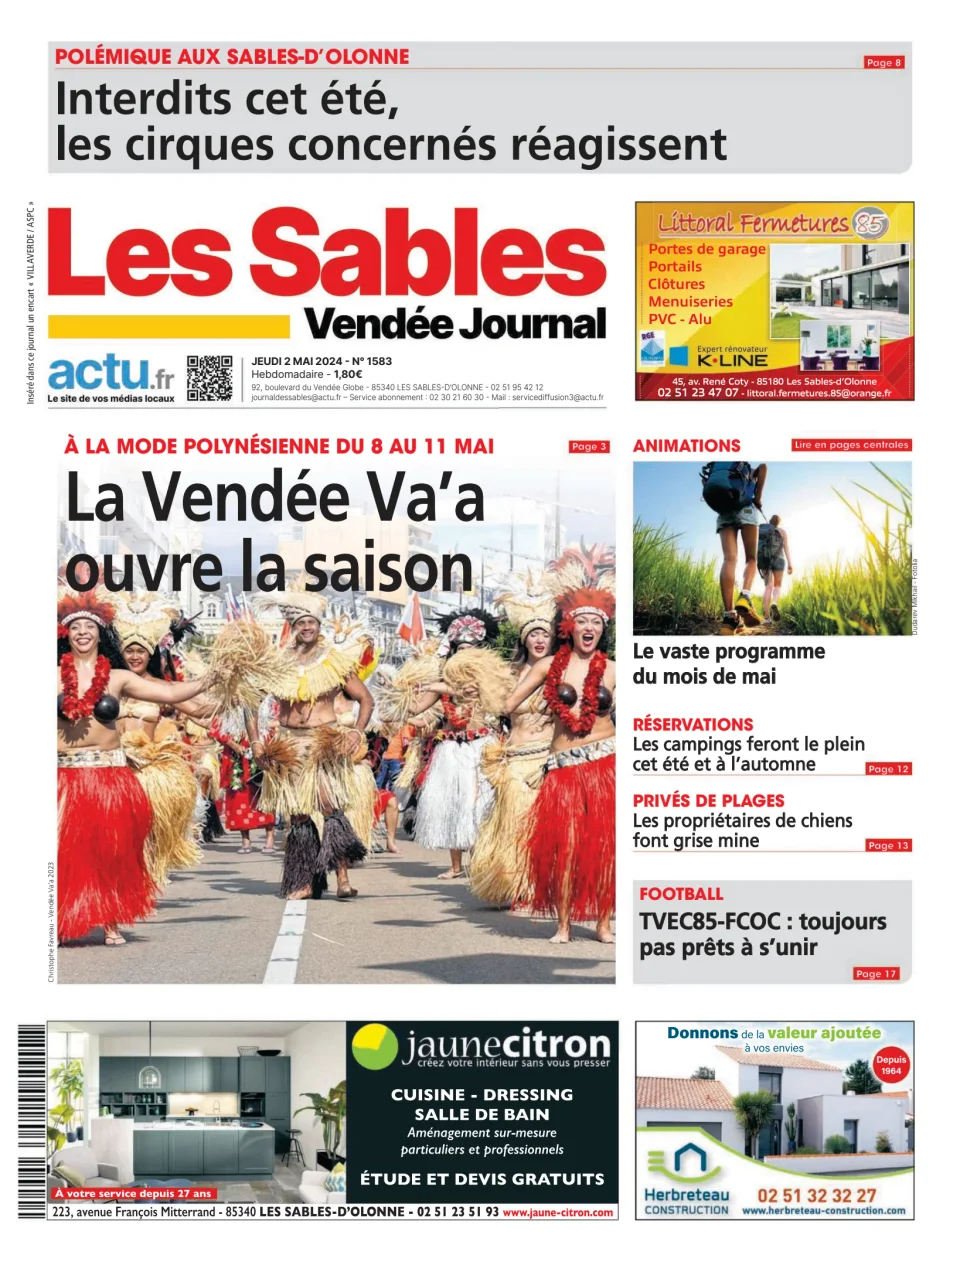 Les Sables Vendée Journal